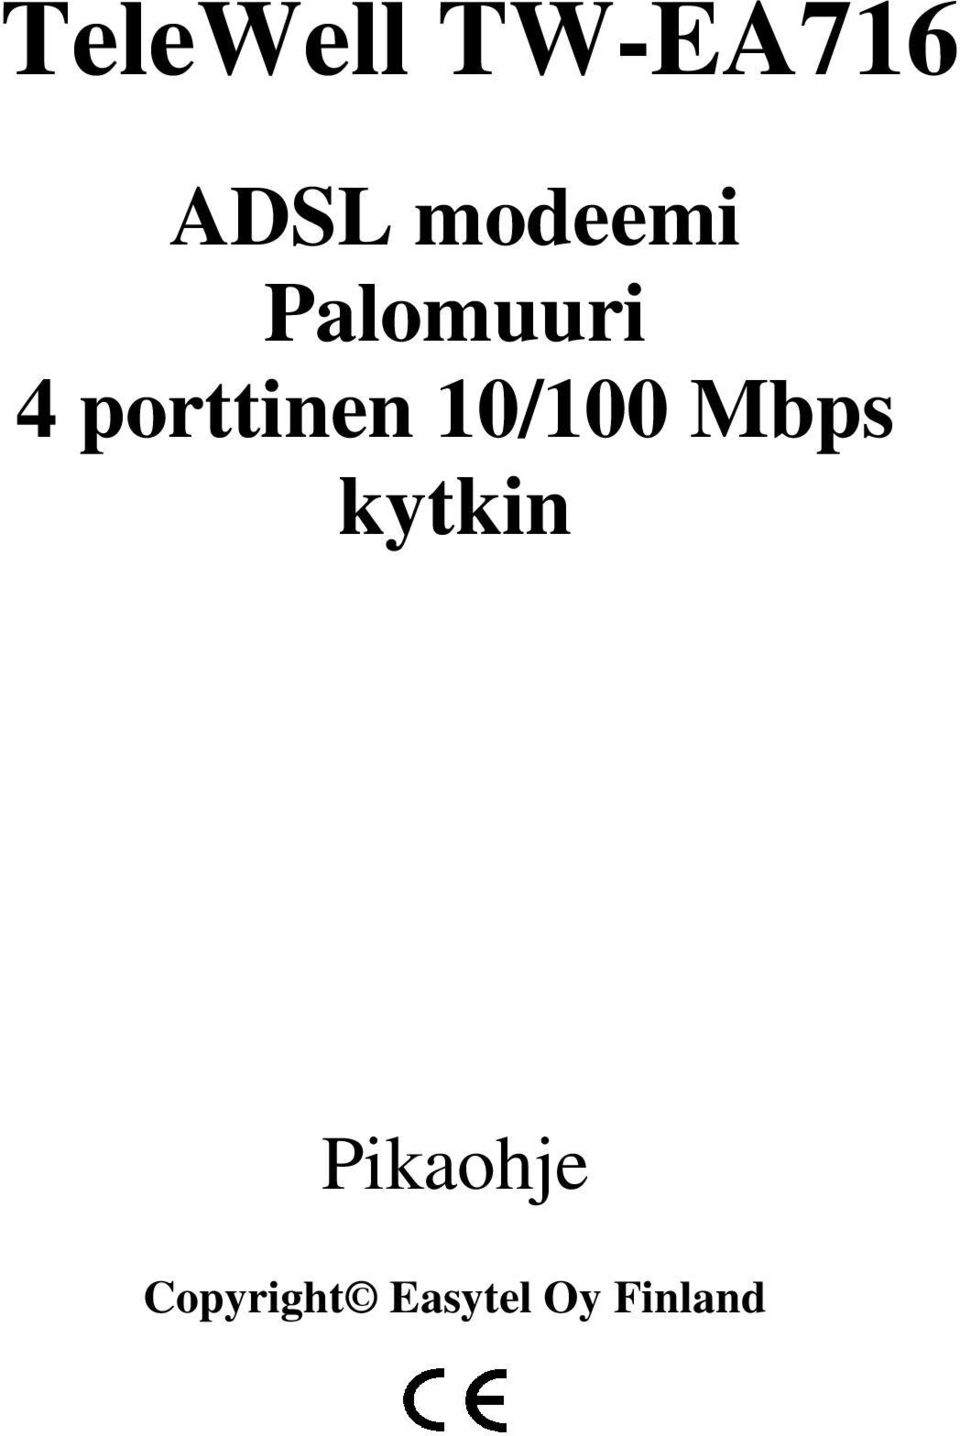 porttinen 10/100 Mbps